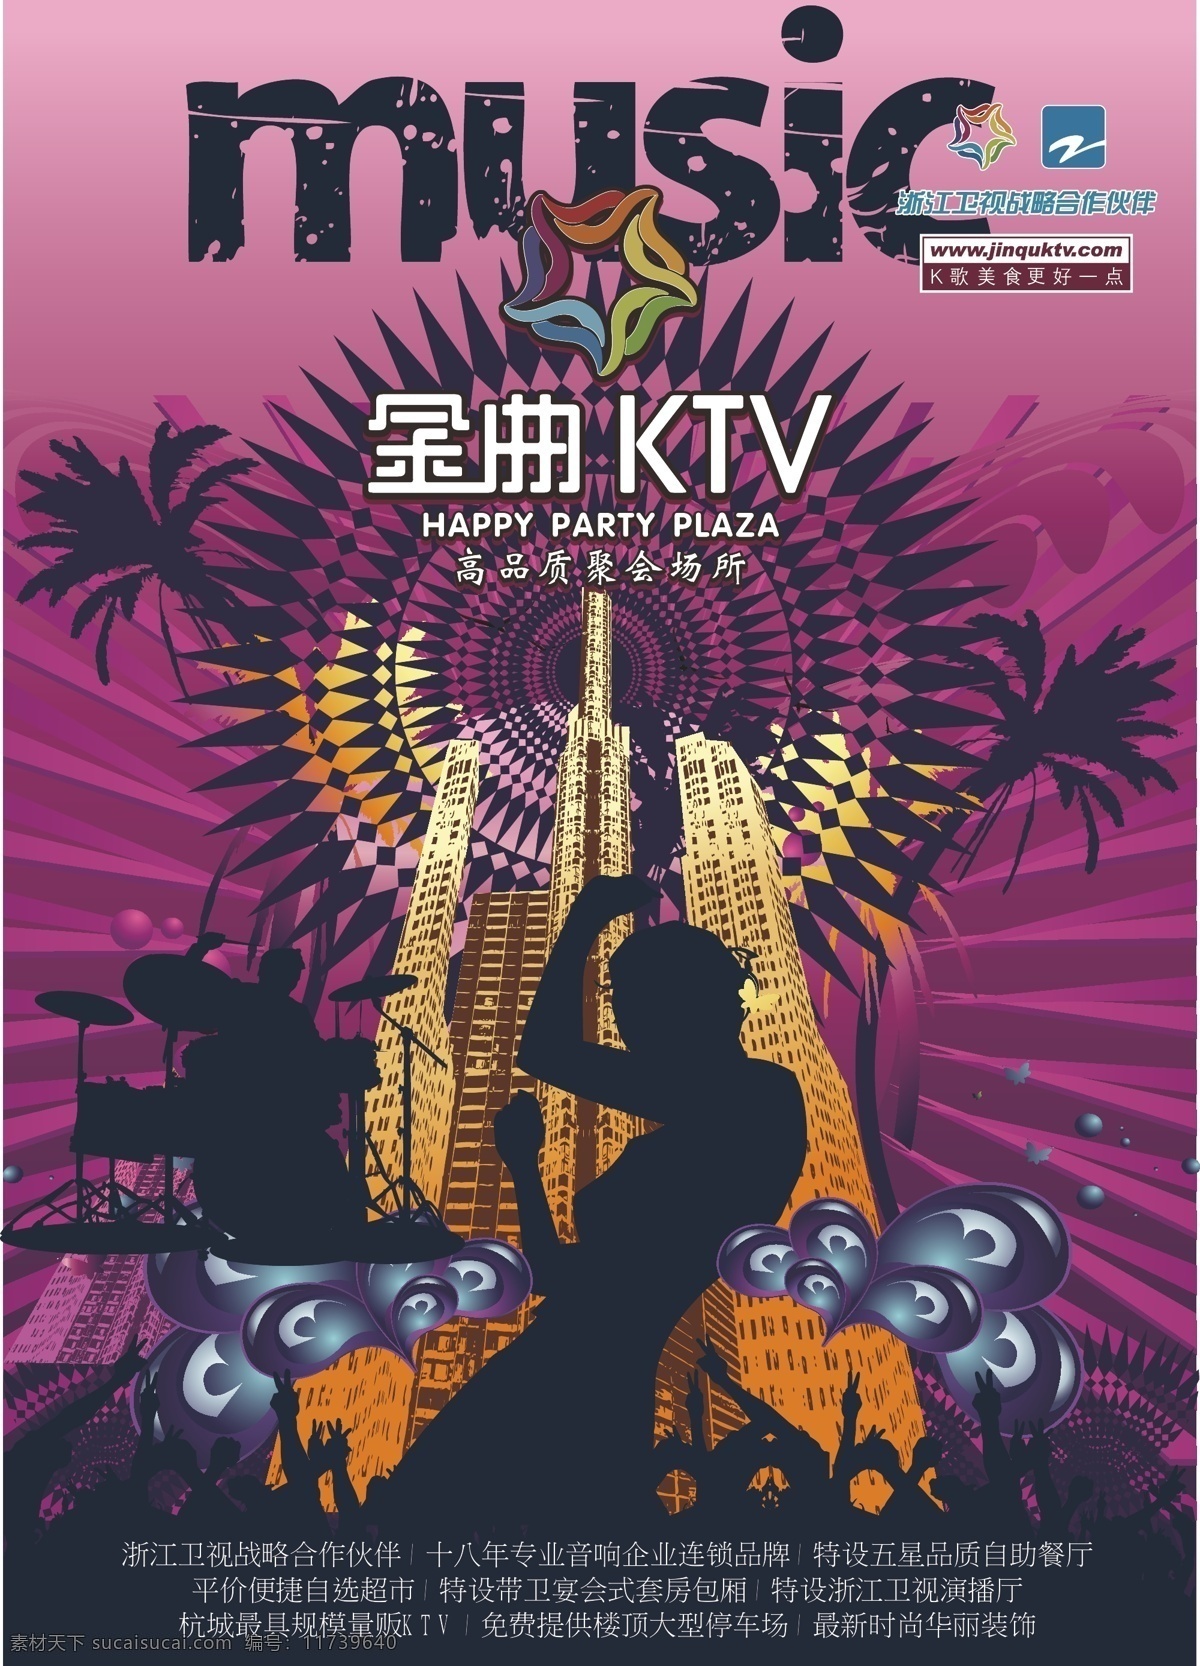 ktv ktv海报 music 激情 其他设计 人物 跳舞 旋律 海报 矢量 模板下载 音乐 音响 其他海报设计